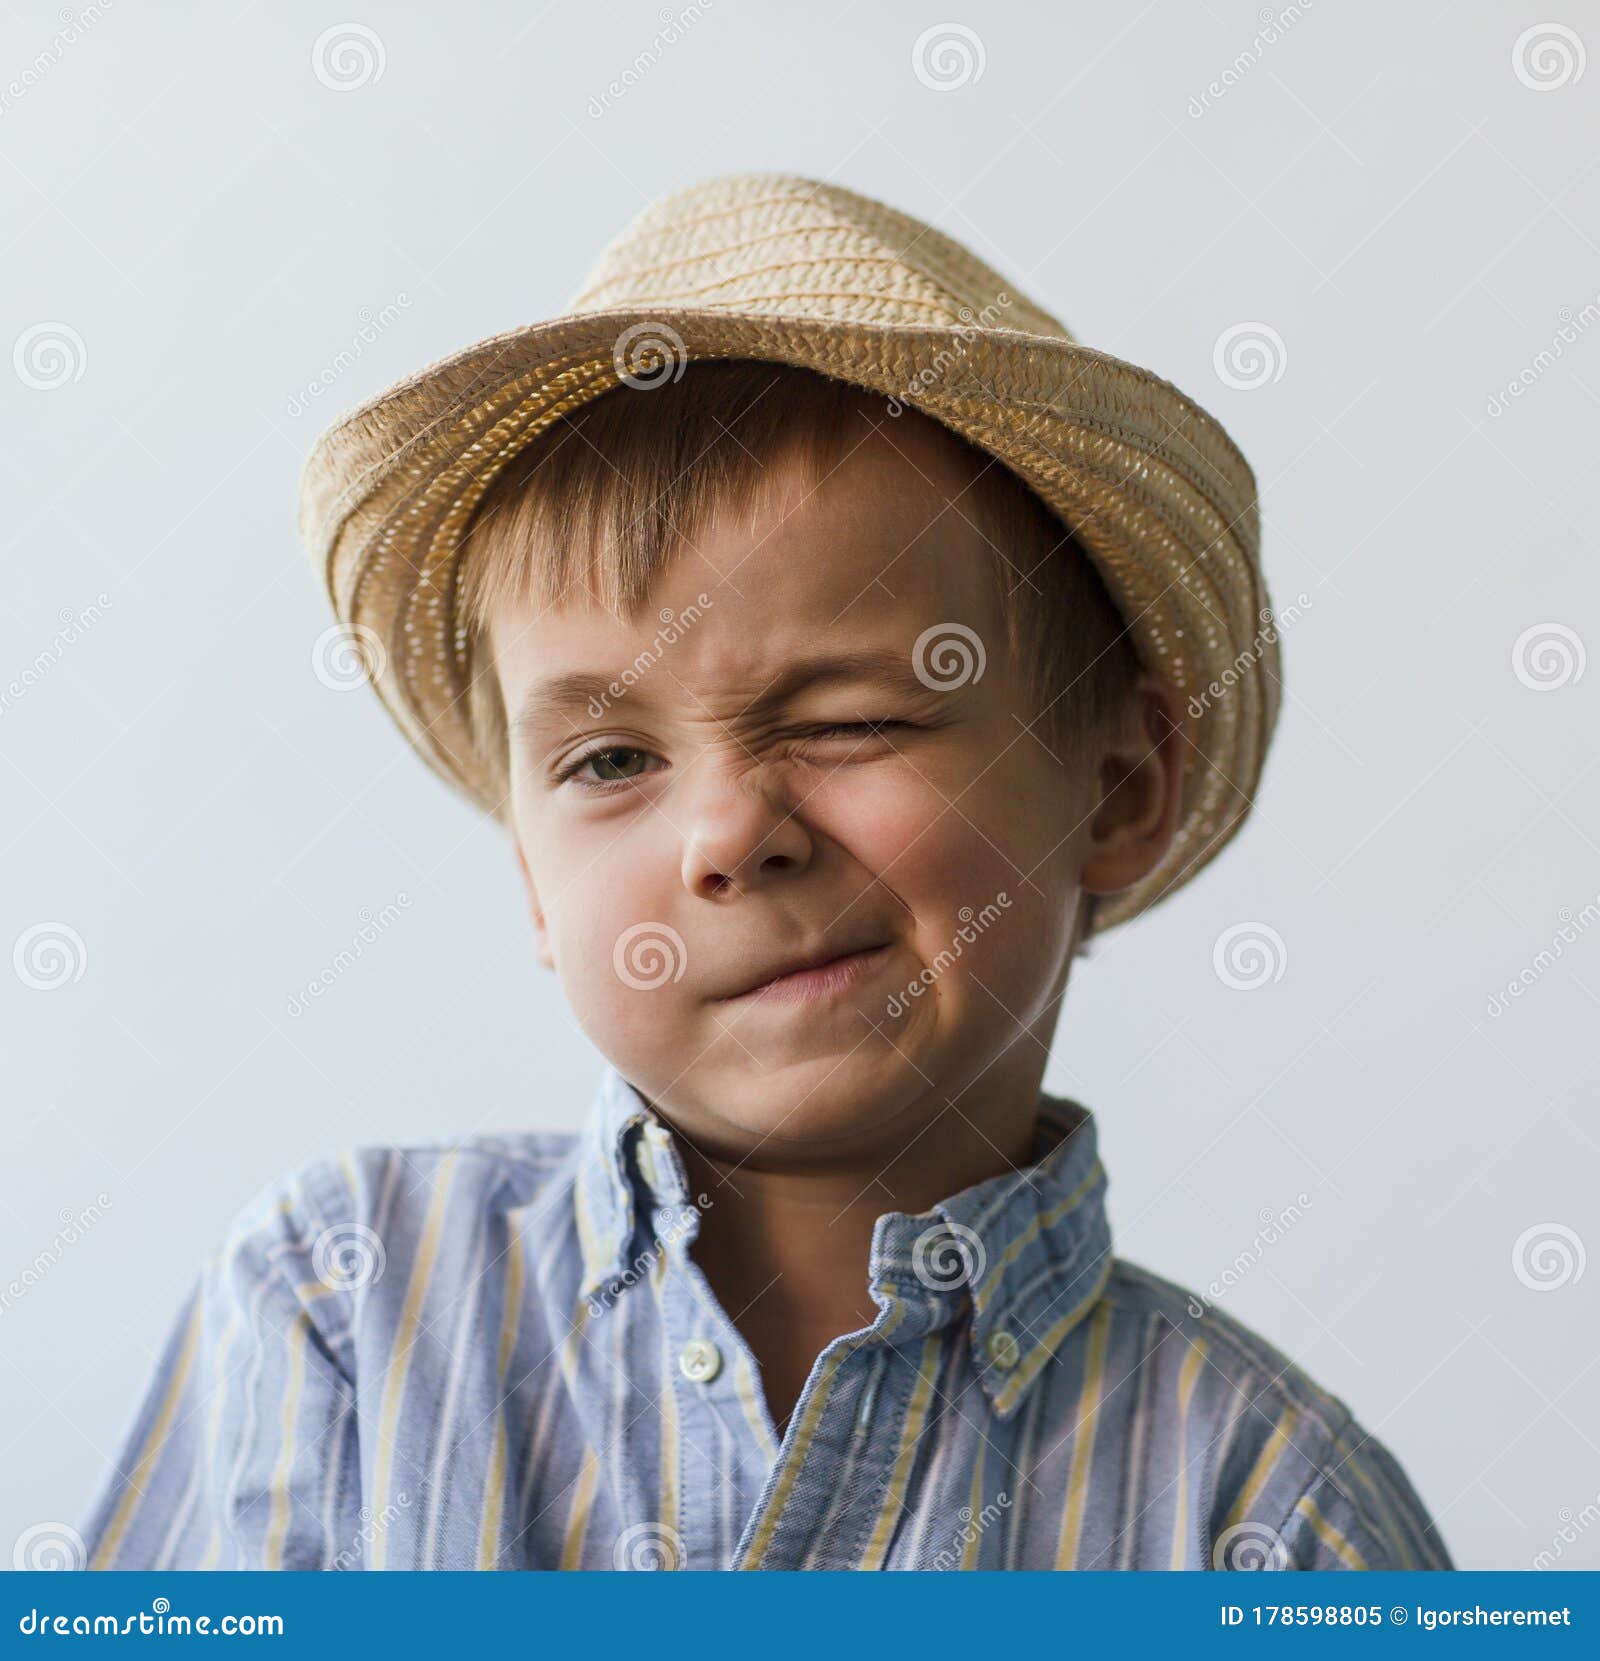 ragazzo con cappello Stock Photo